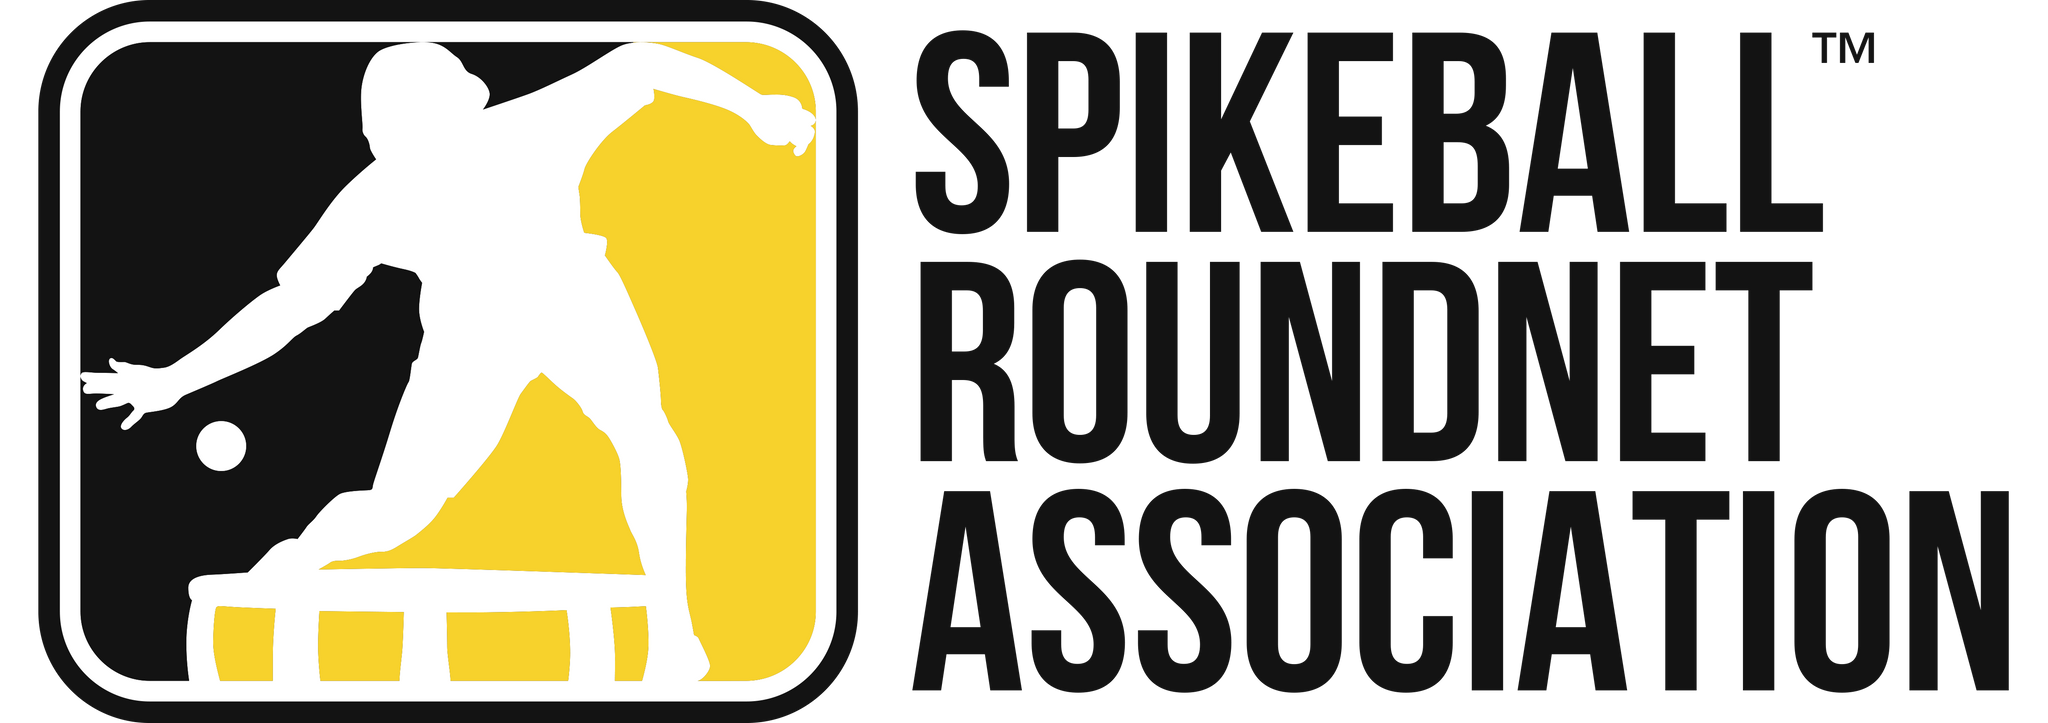 Spikeball™ Roundnet Association - 2017 Top 40 Players